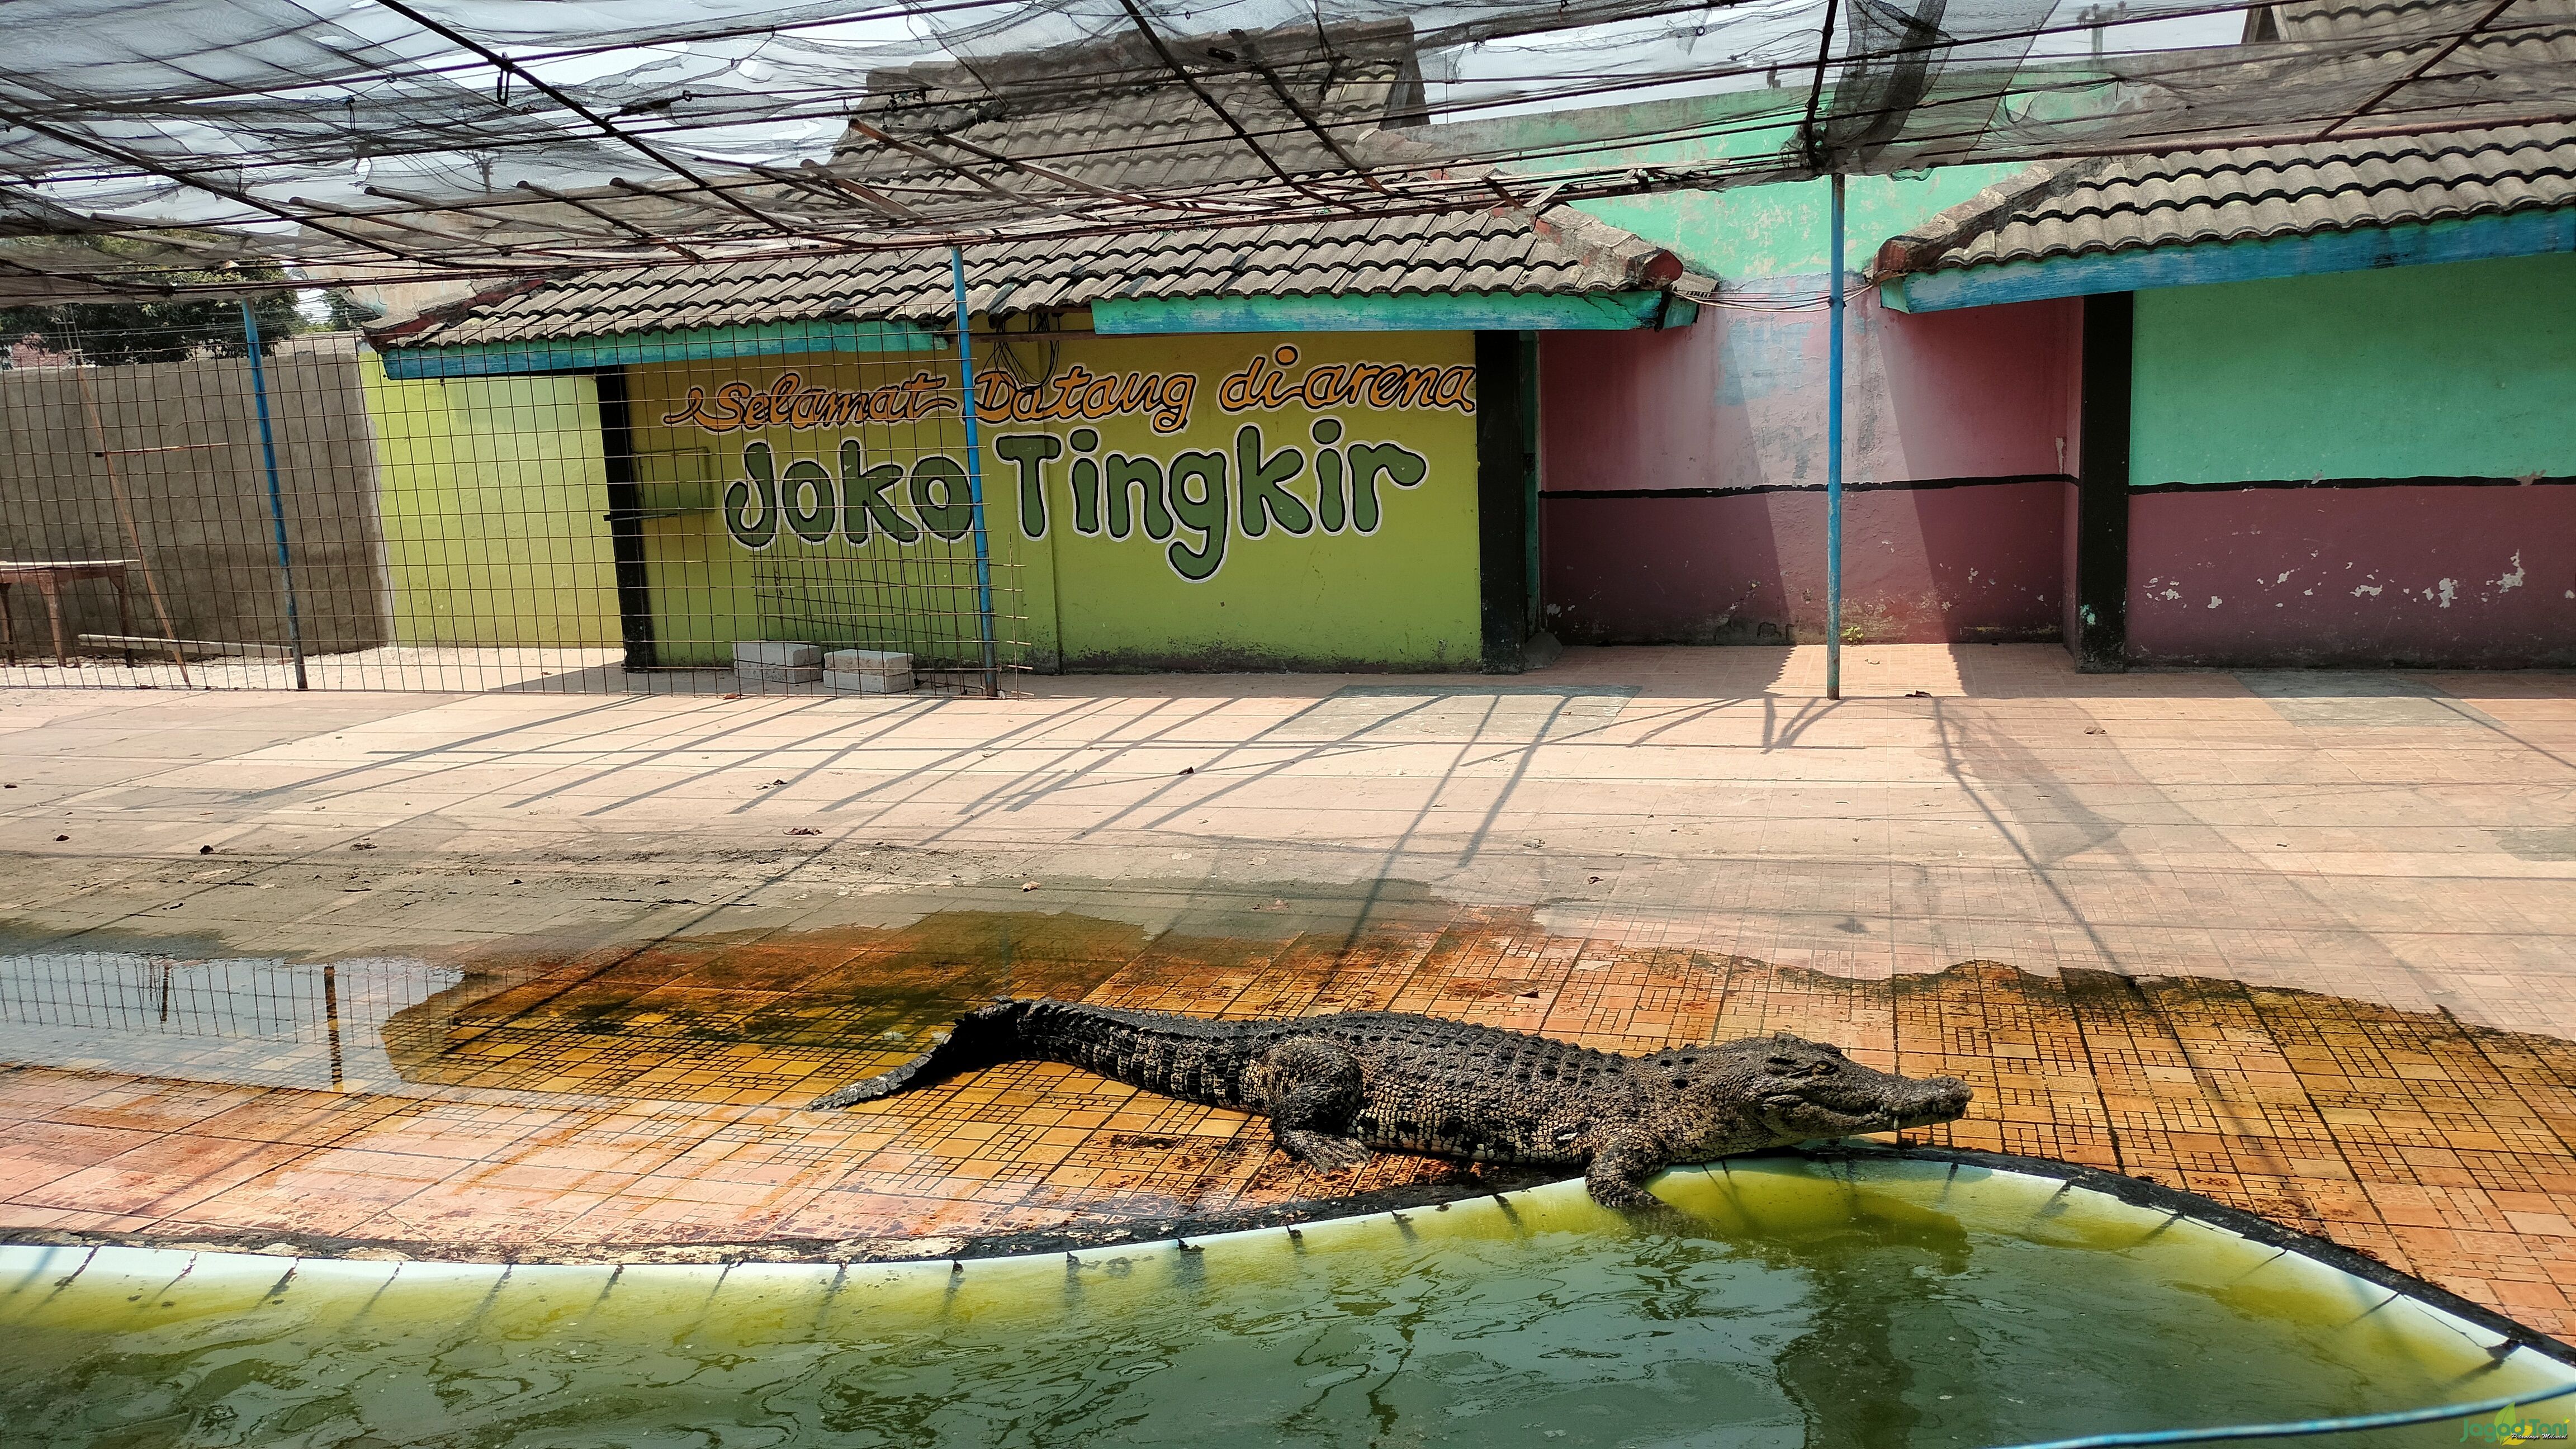 Atraksi Joko Tingkir di  Taman Buaya Indonesia Jaya (